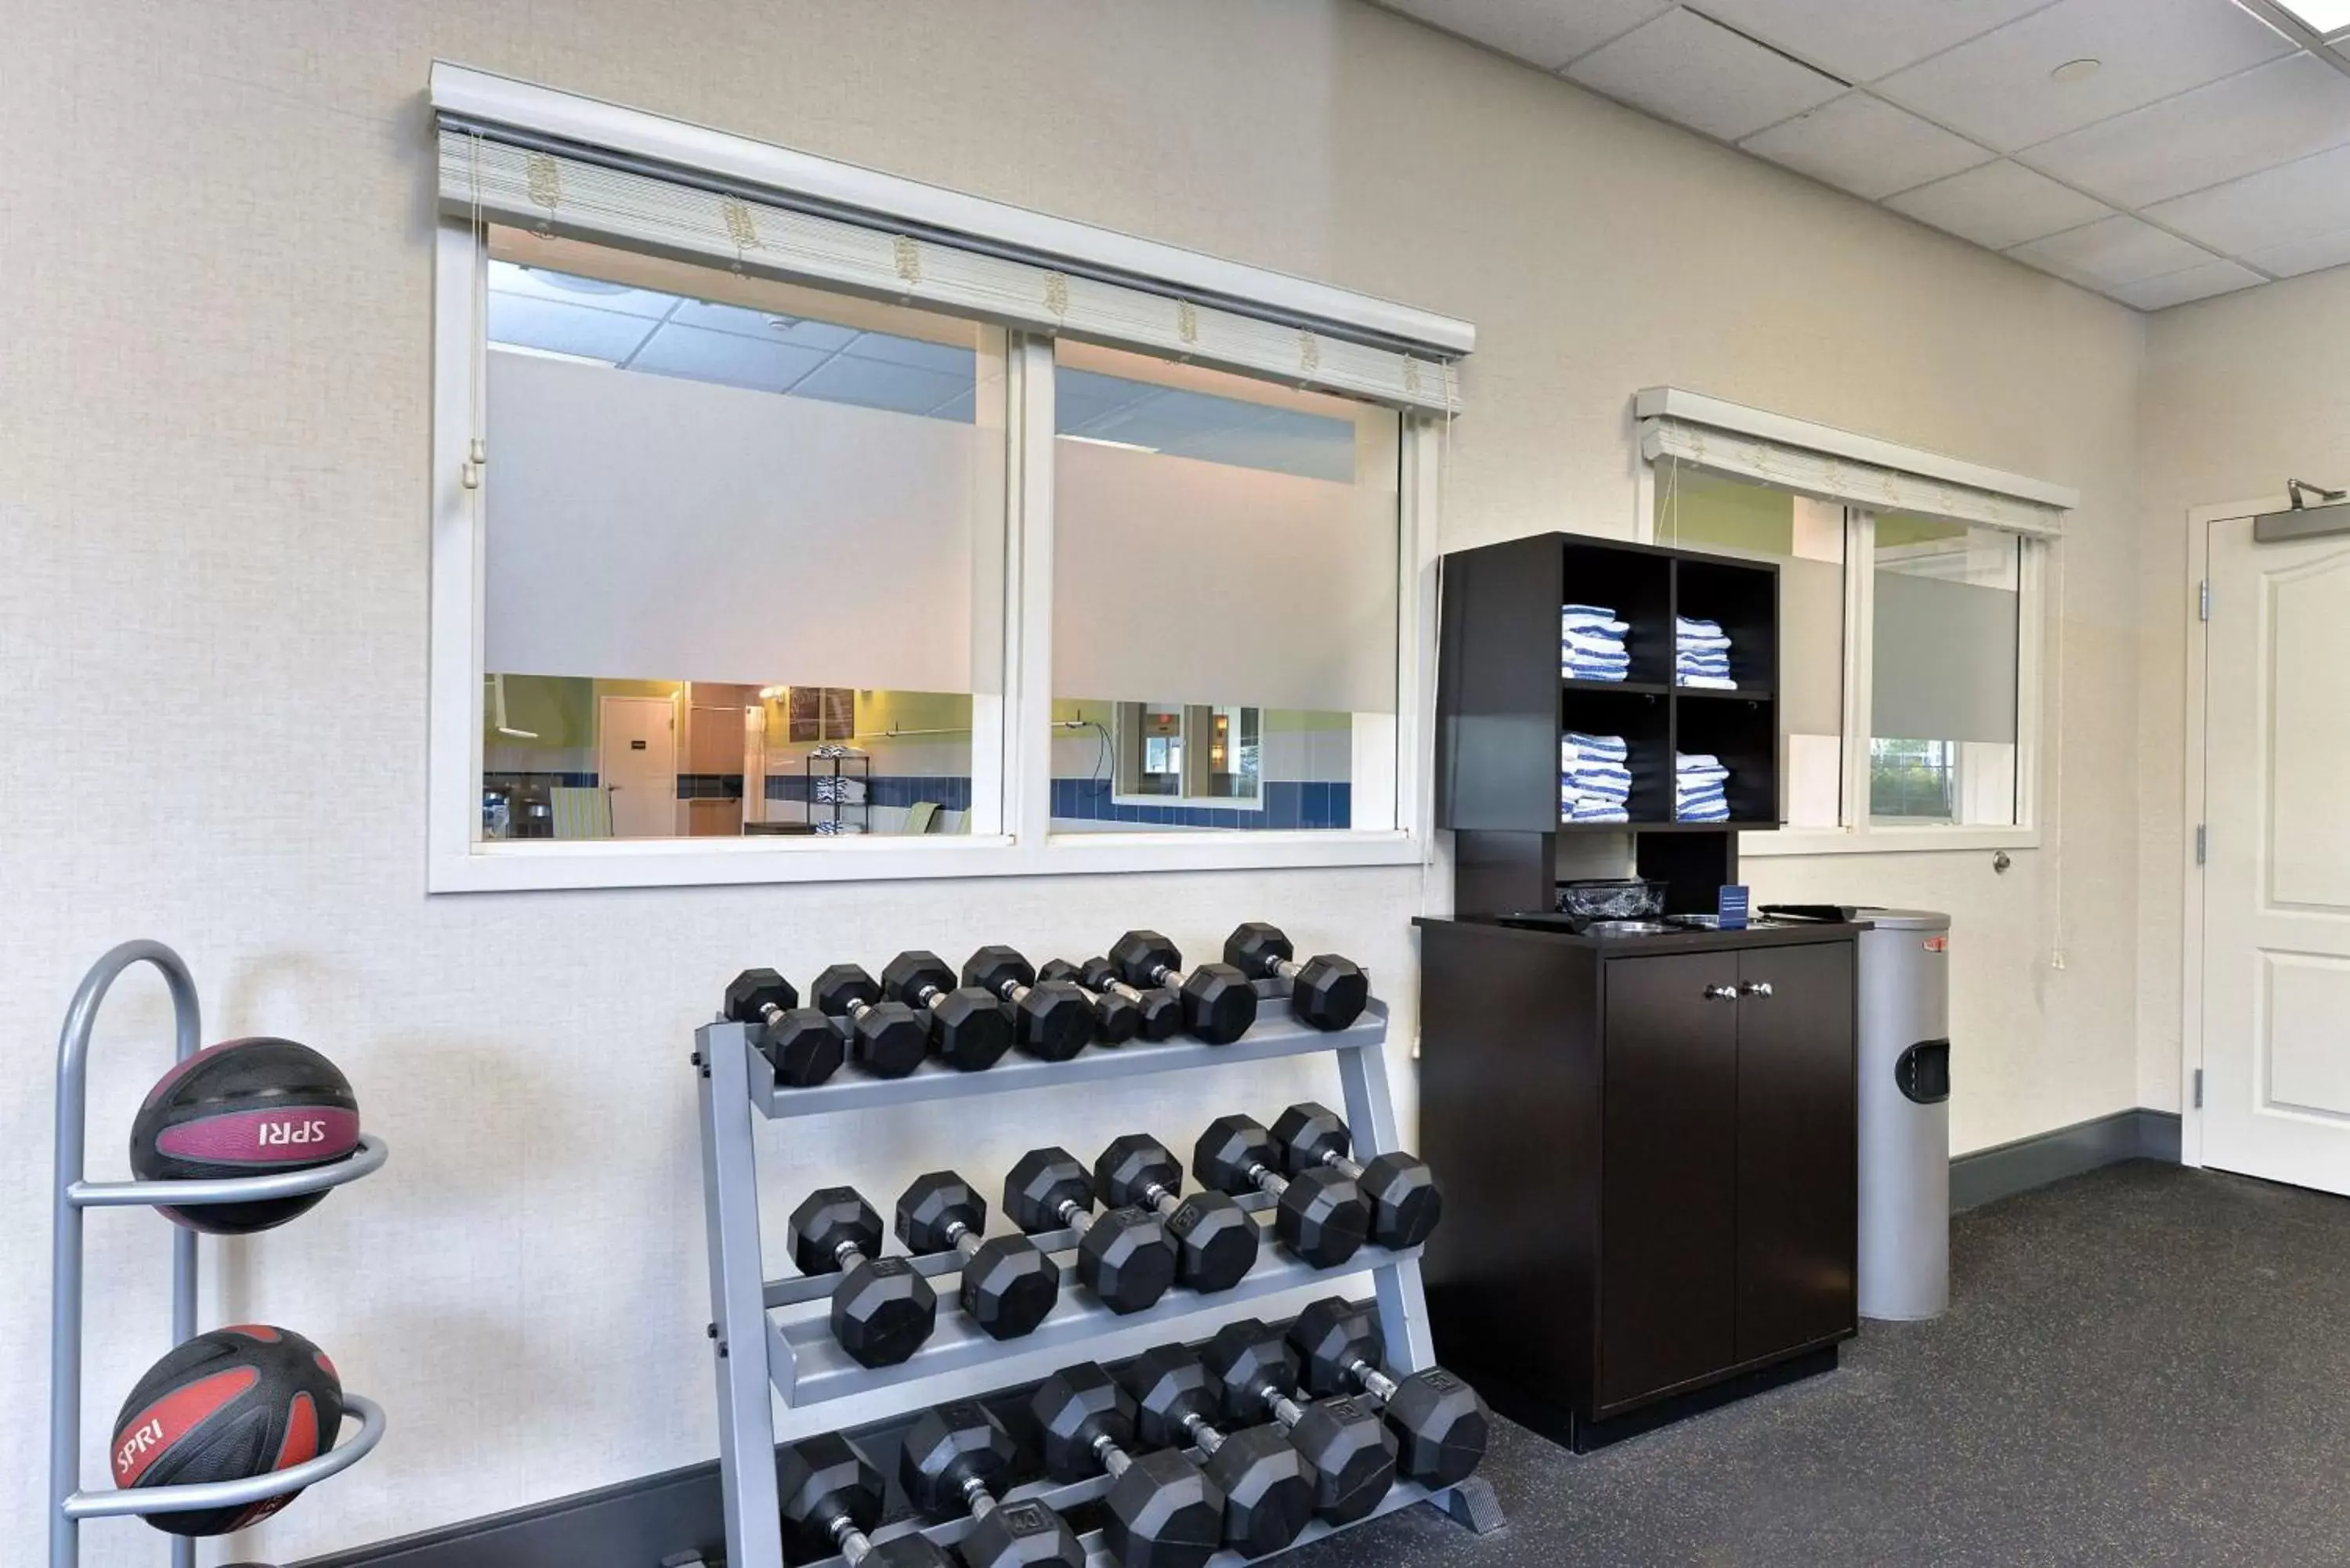 Fitness centre/facilities, Fitness Center/Facilities in Hampton Inn Ellsworth